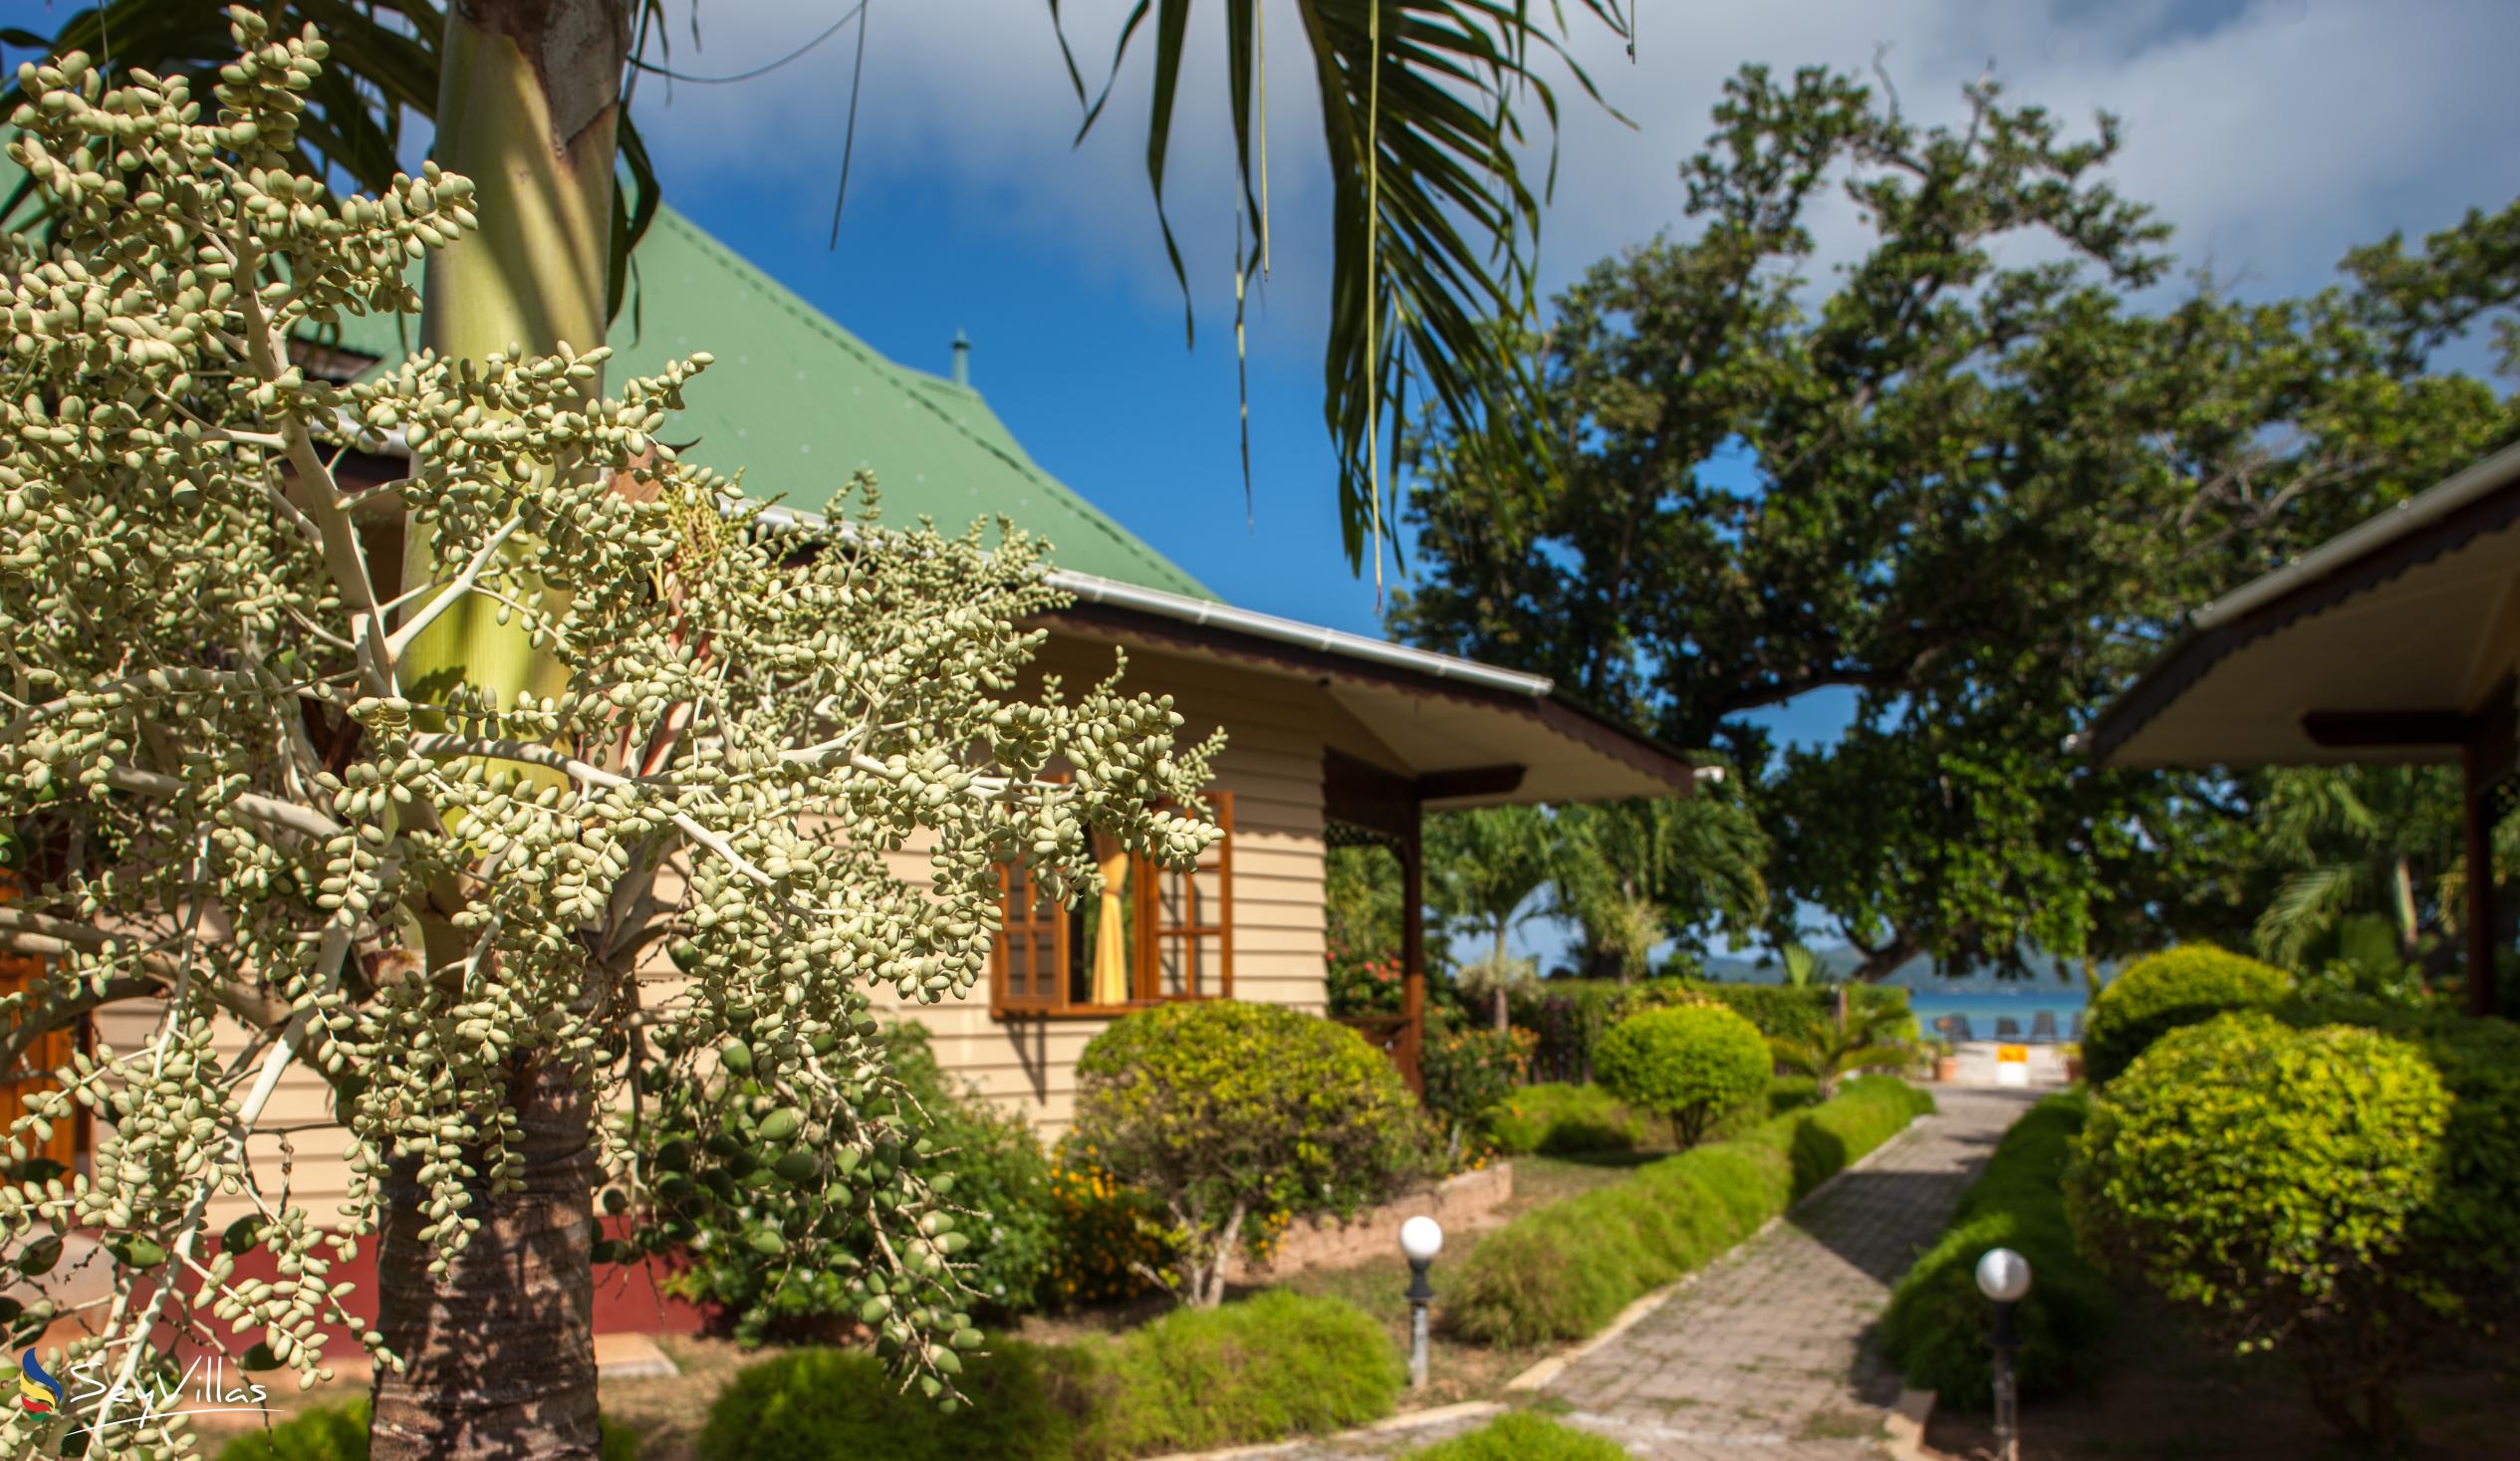 Photo 7: Villa Creole - Outdoor area - La Digue (Seychelles)